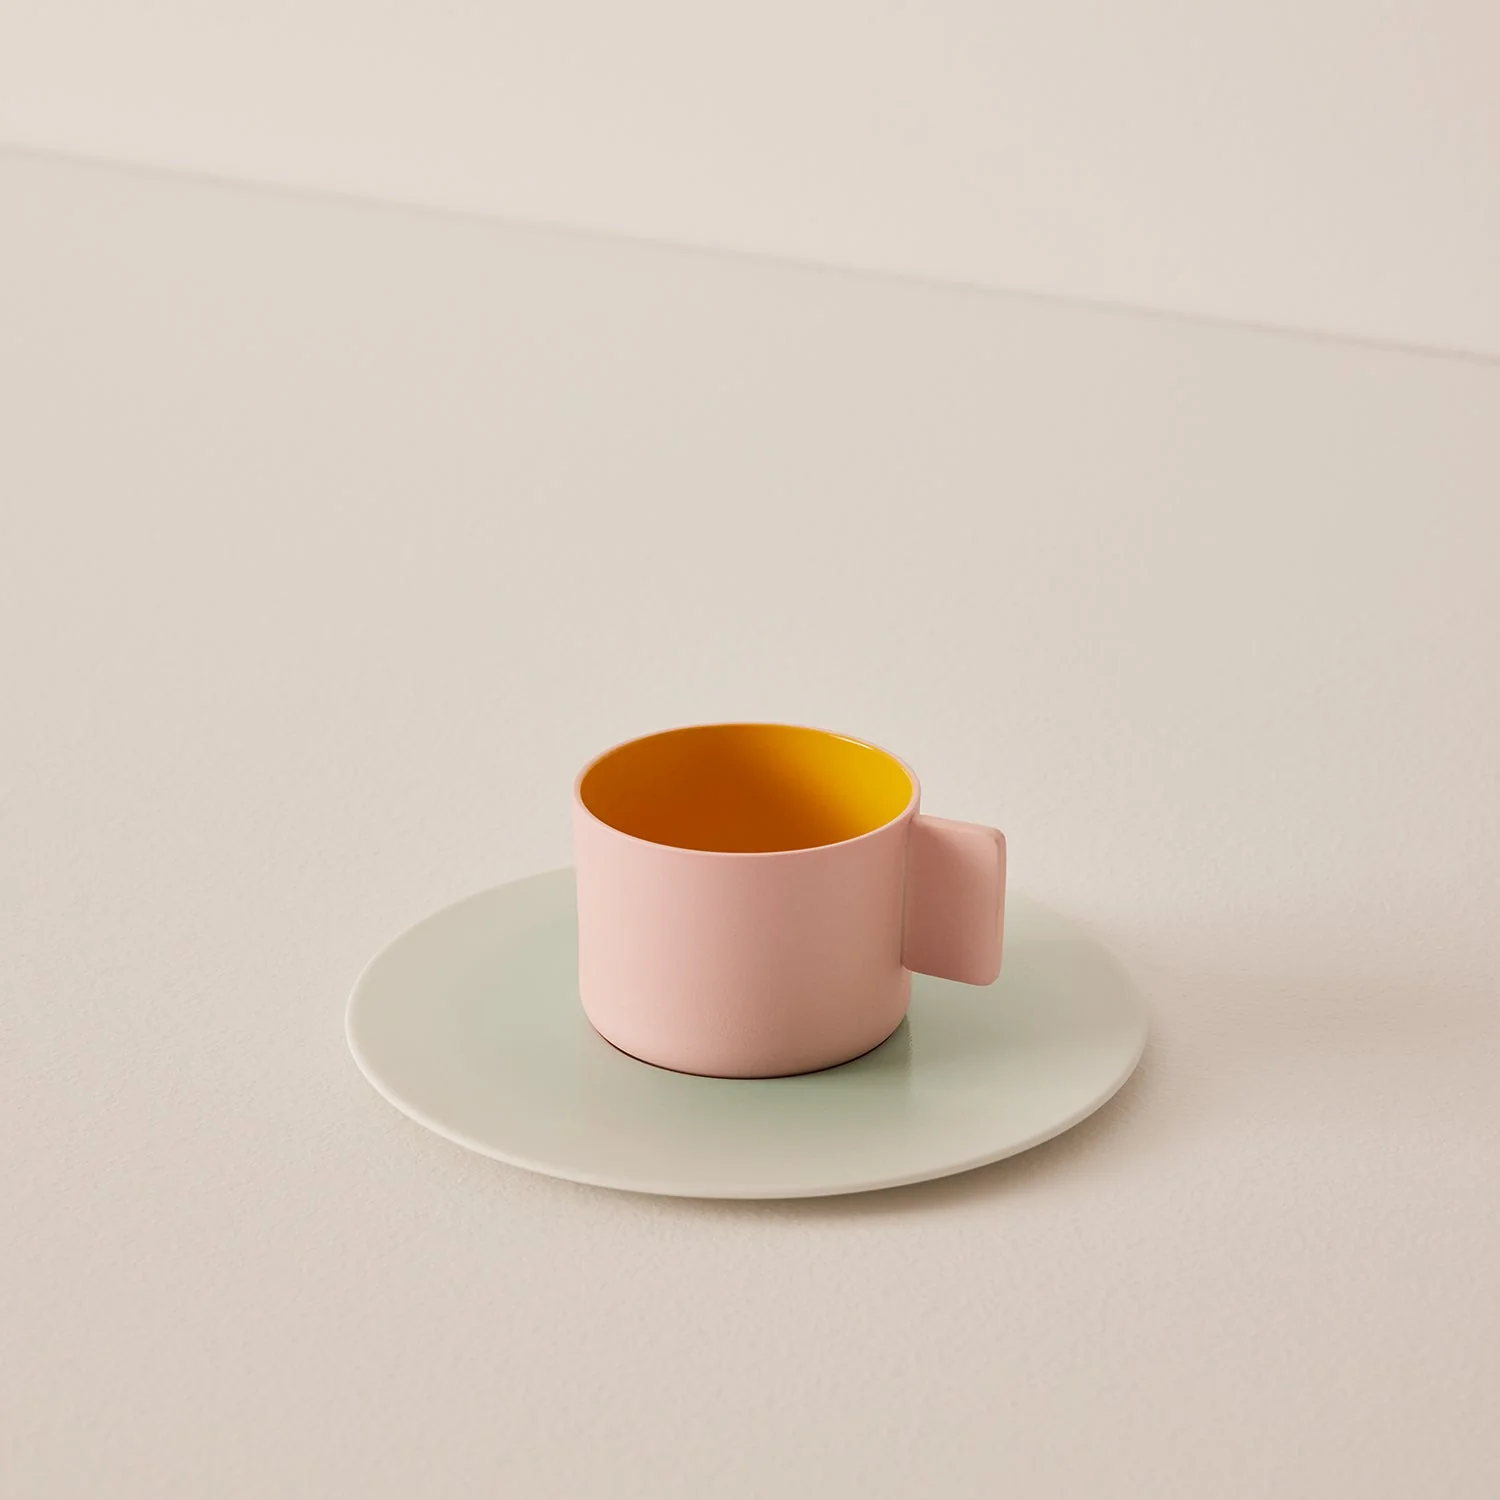 Pink and yellow coffee mug